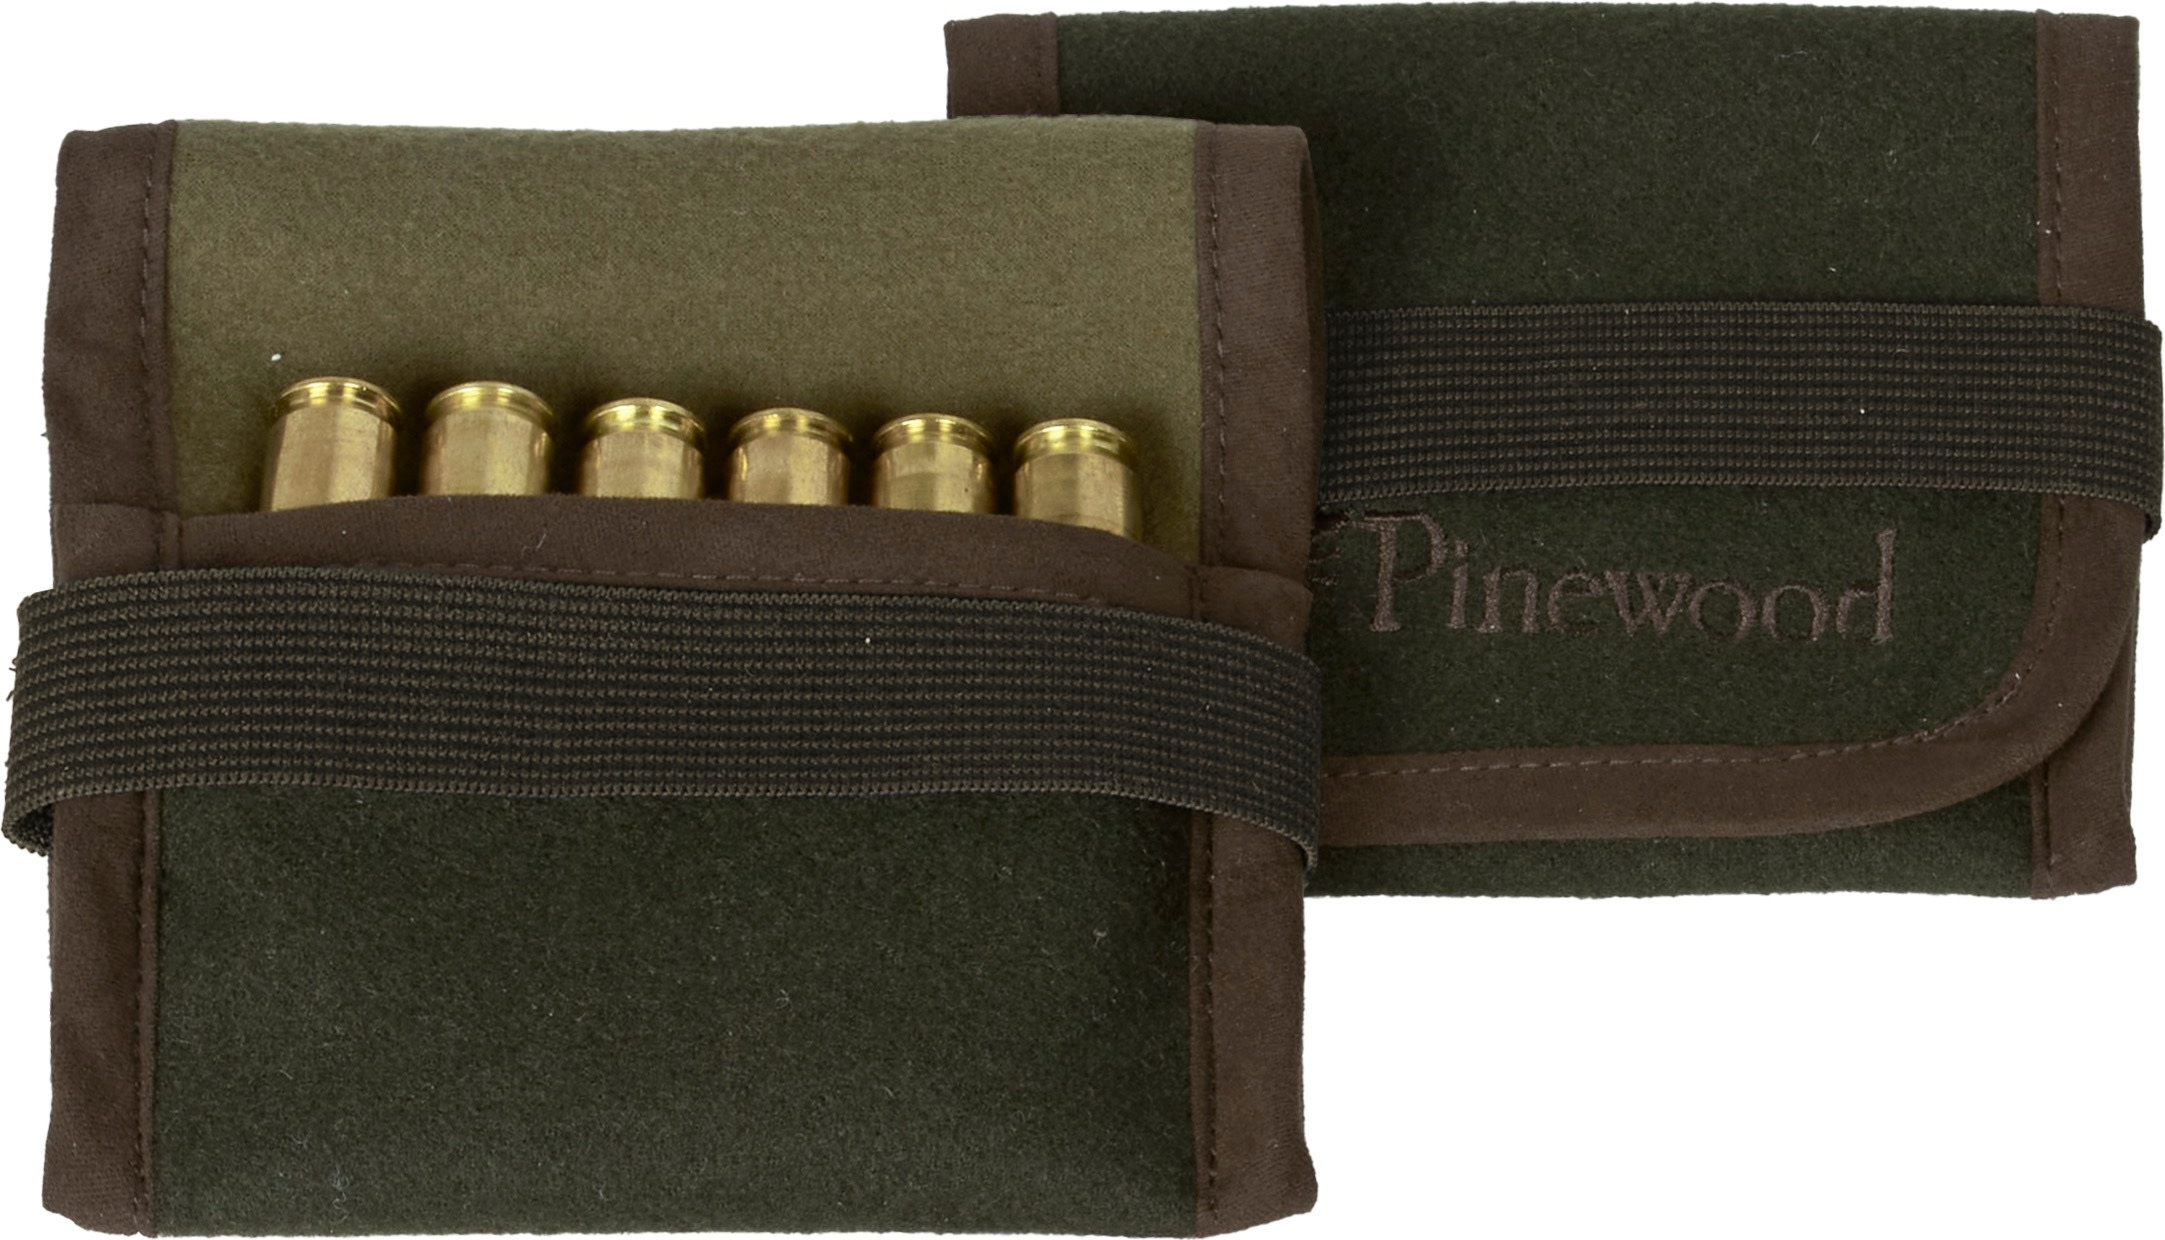 Pinewood Ammunition Holder Bag Moss Green